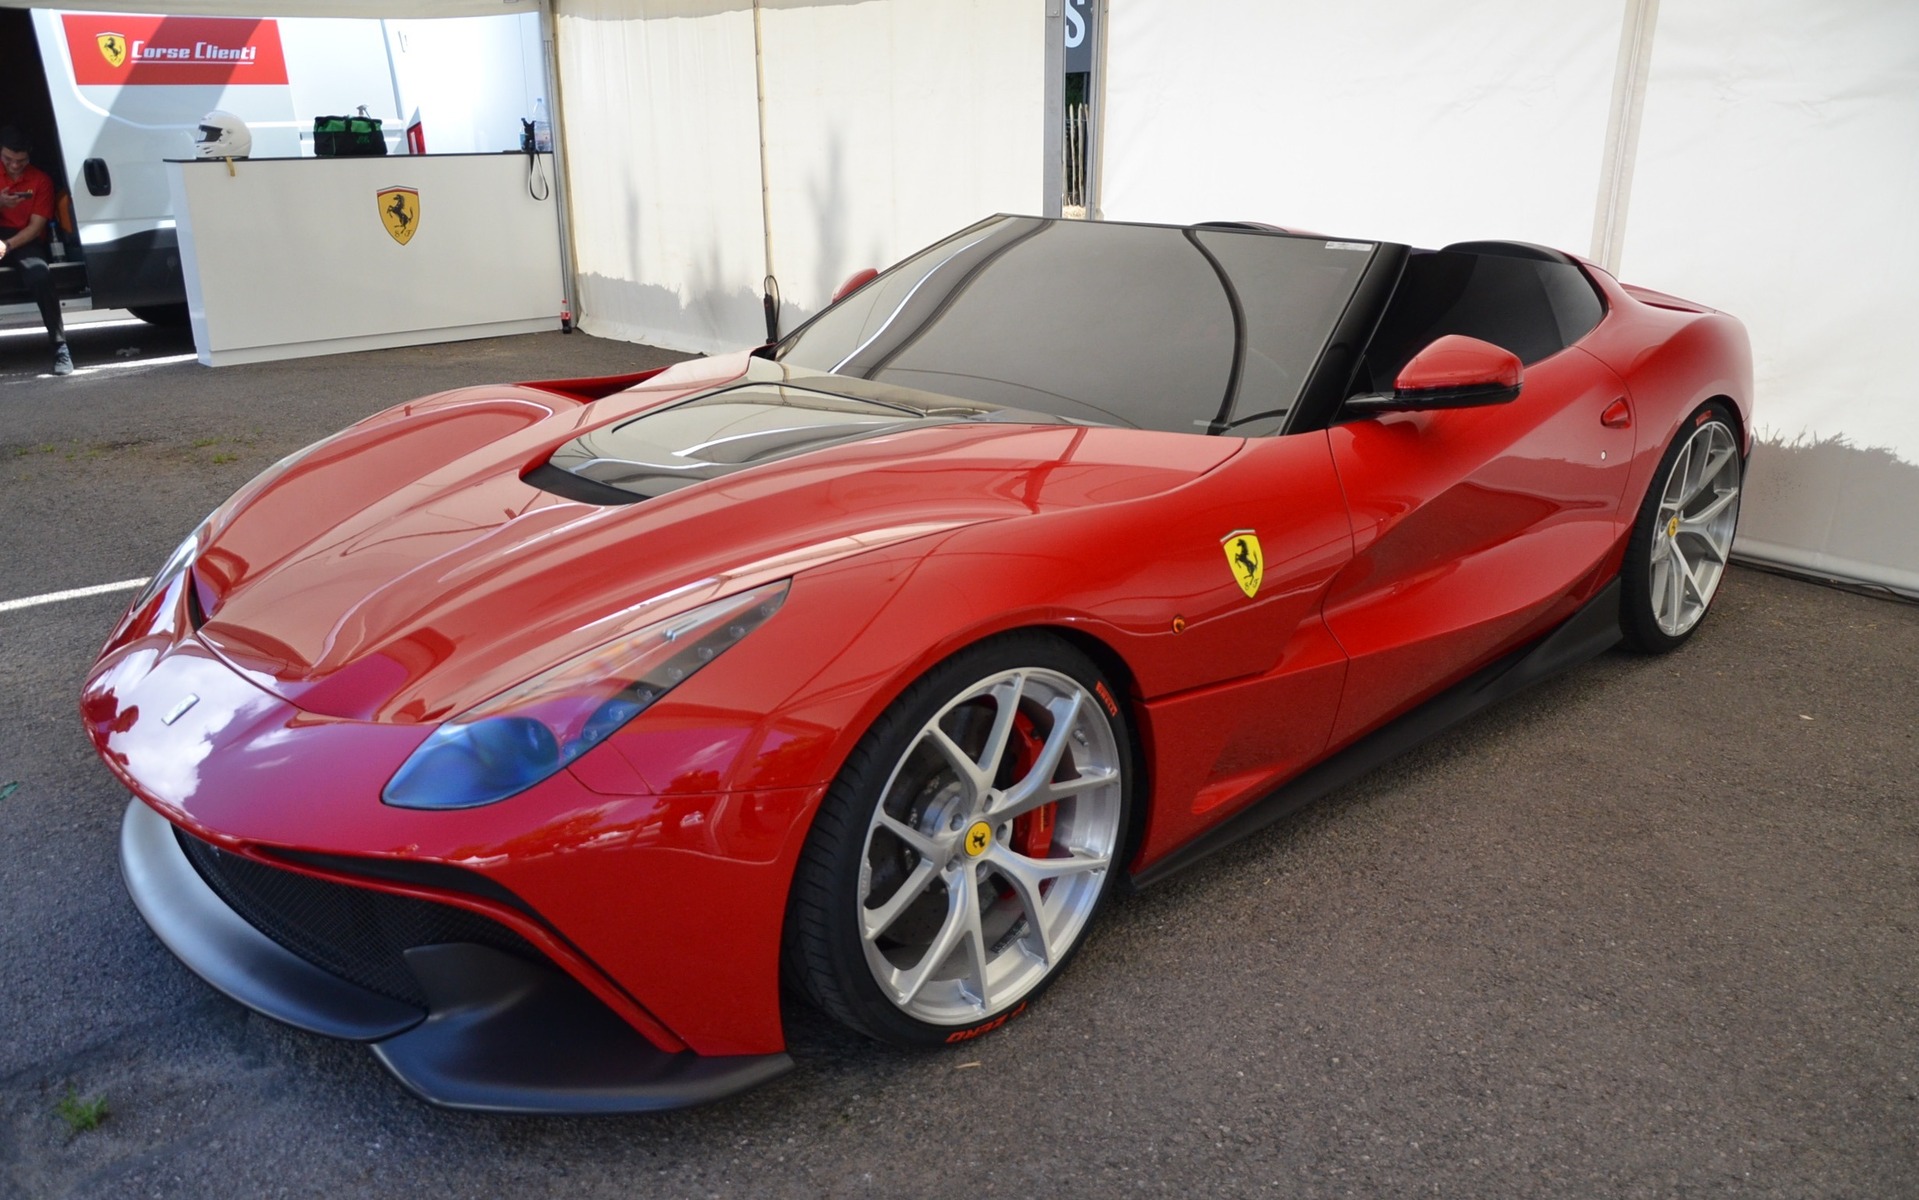 Festival of Speed de Goodwood 2015 - Ferrari F12 TRS